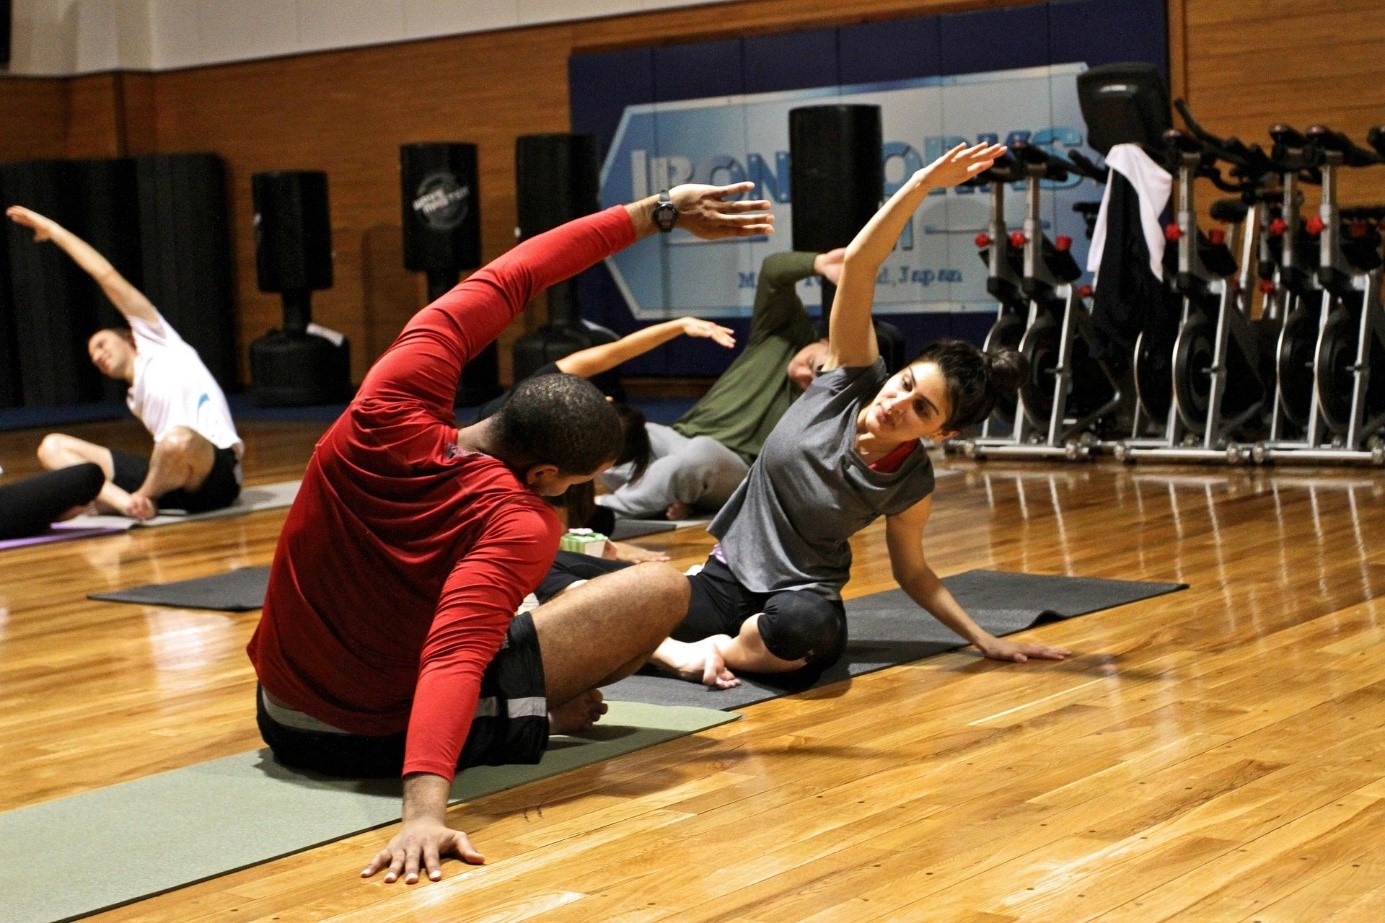 Gymnastique et Yoga pour activité sportive douce